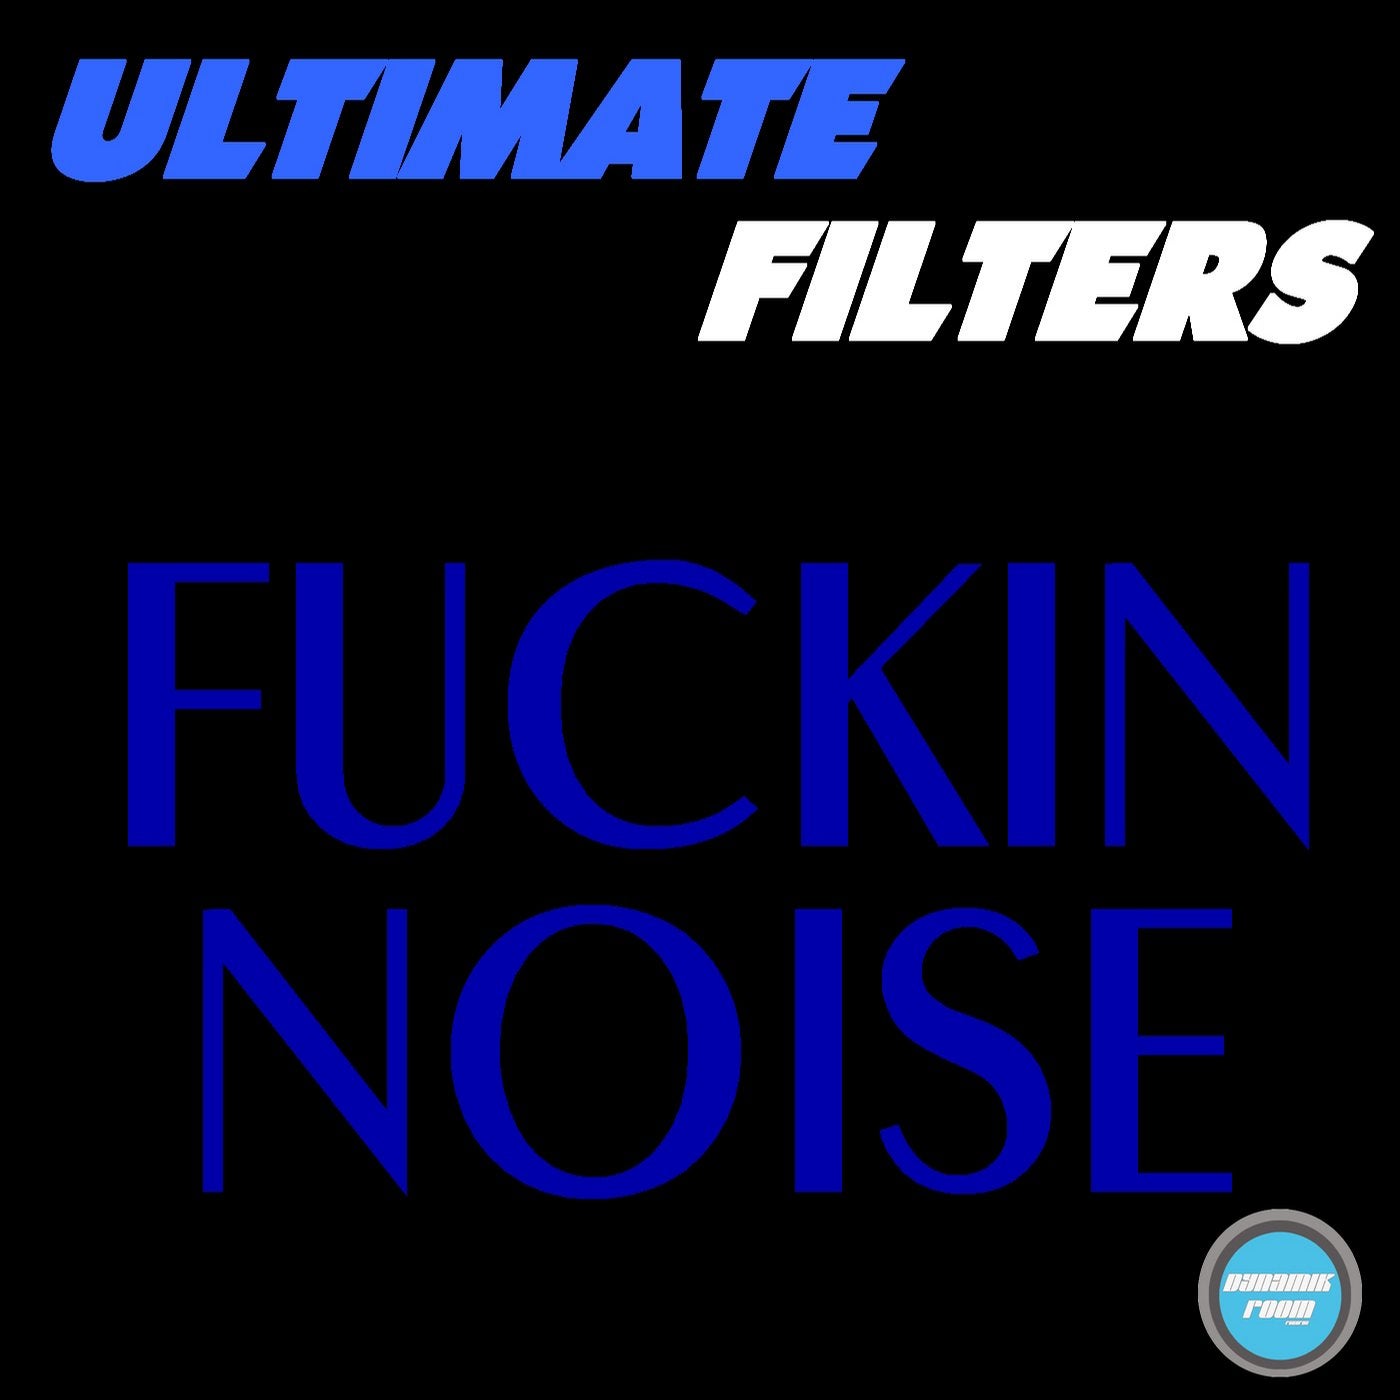 Fucking Noise